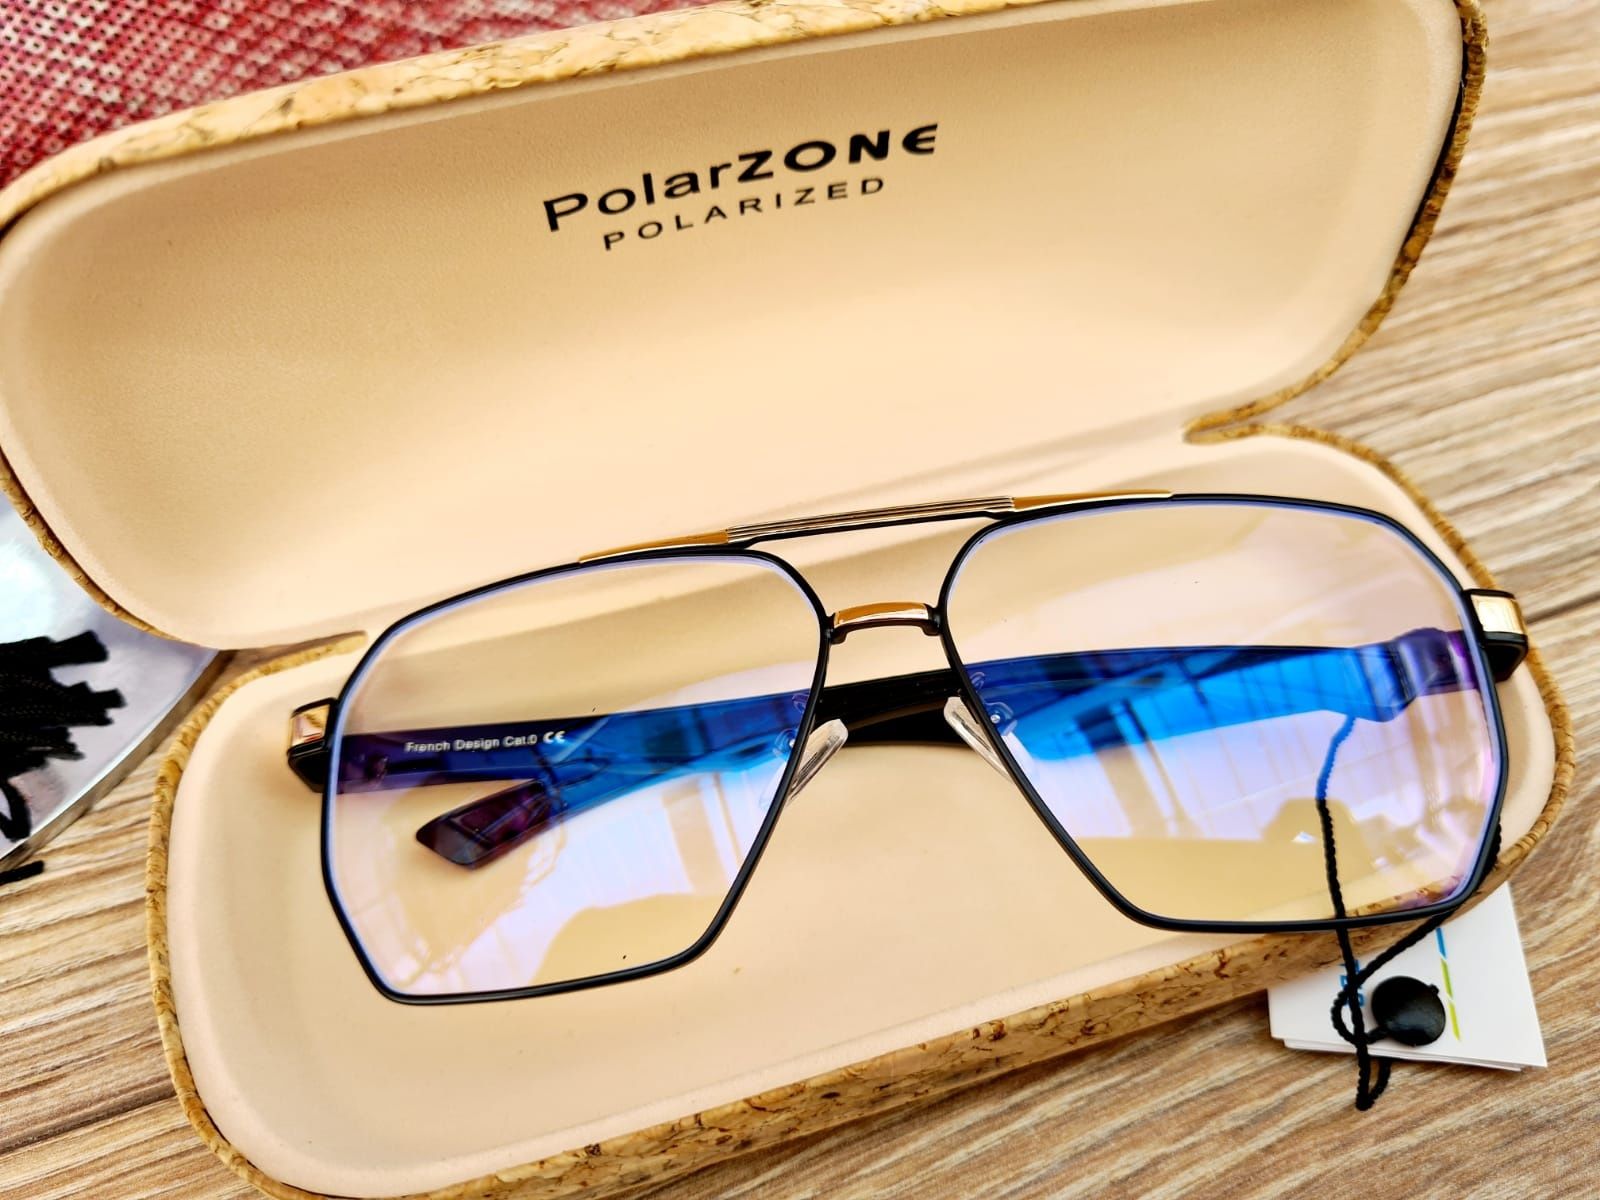 Nowe modne okulary do komputera zerówki męskie marki Polarzone